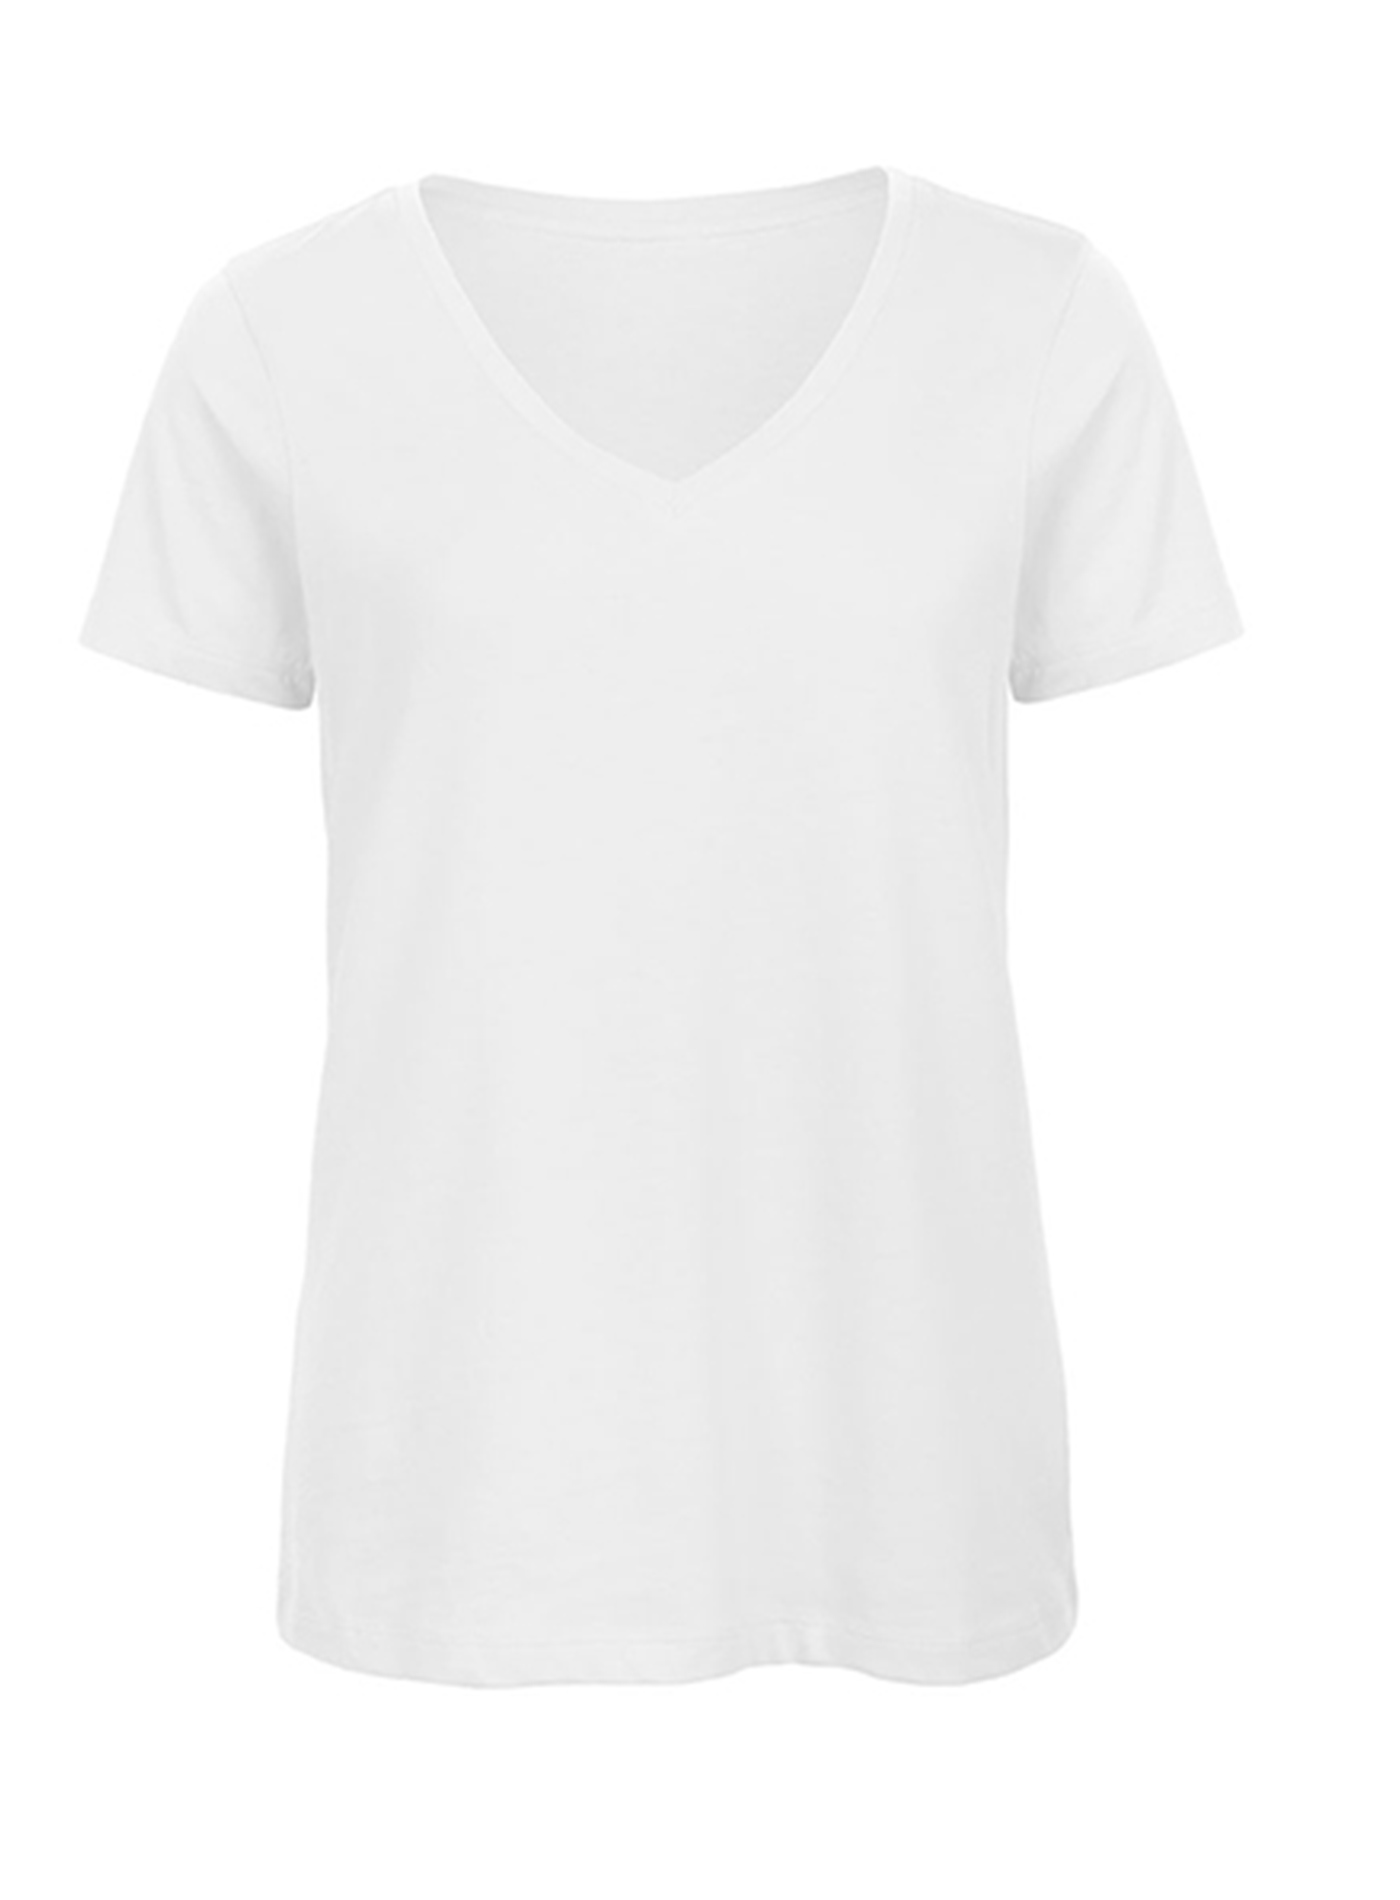 Dámské tričko s výstřihem do V B&C Collection Inspire - Bílá M